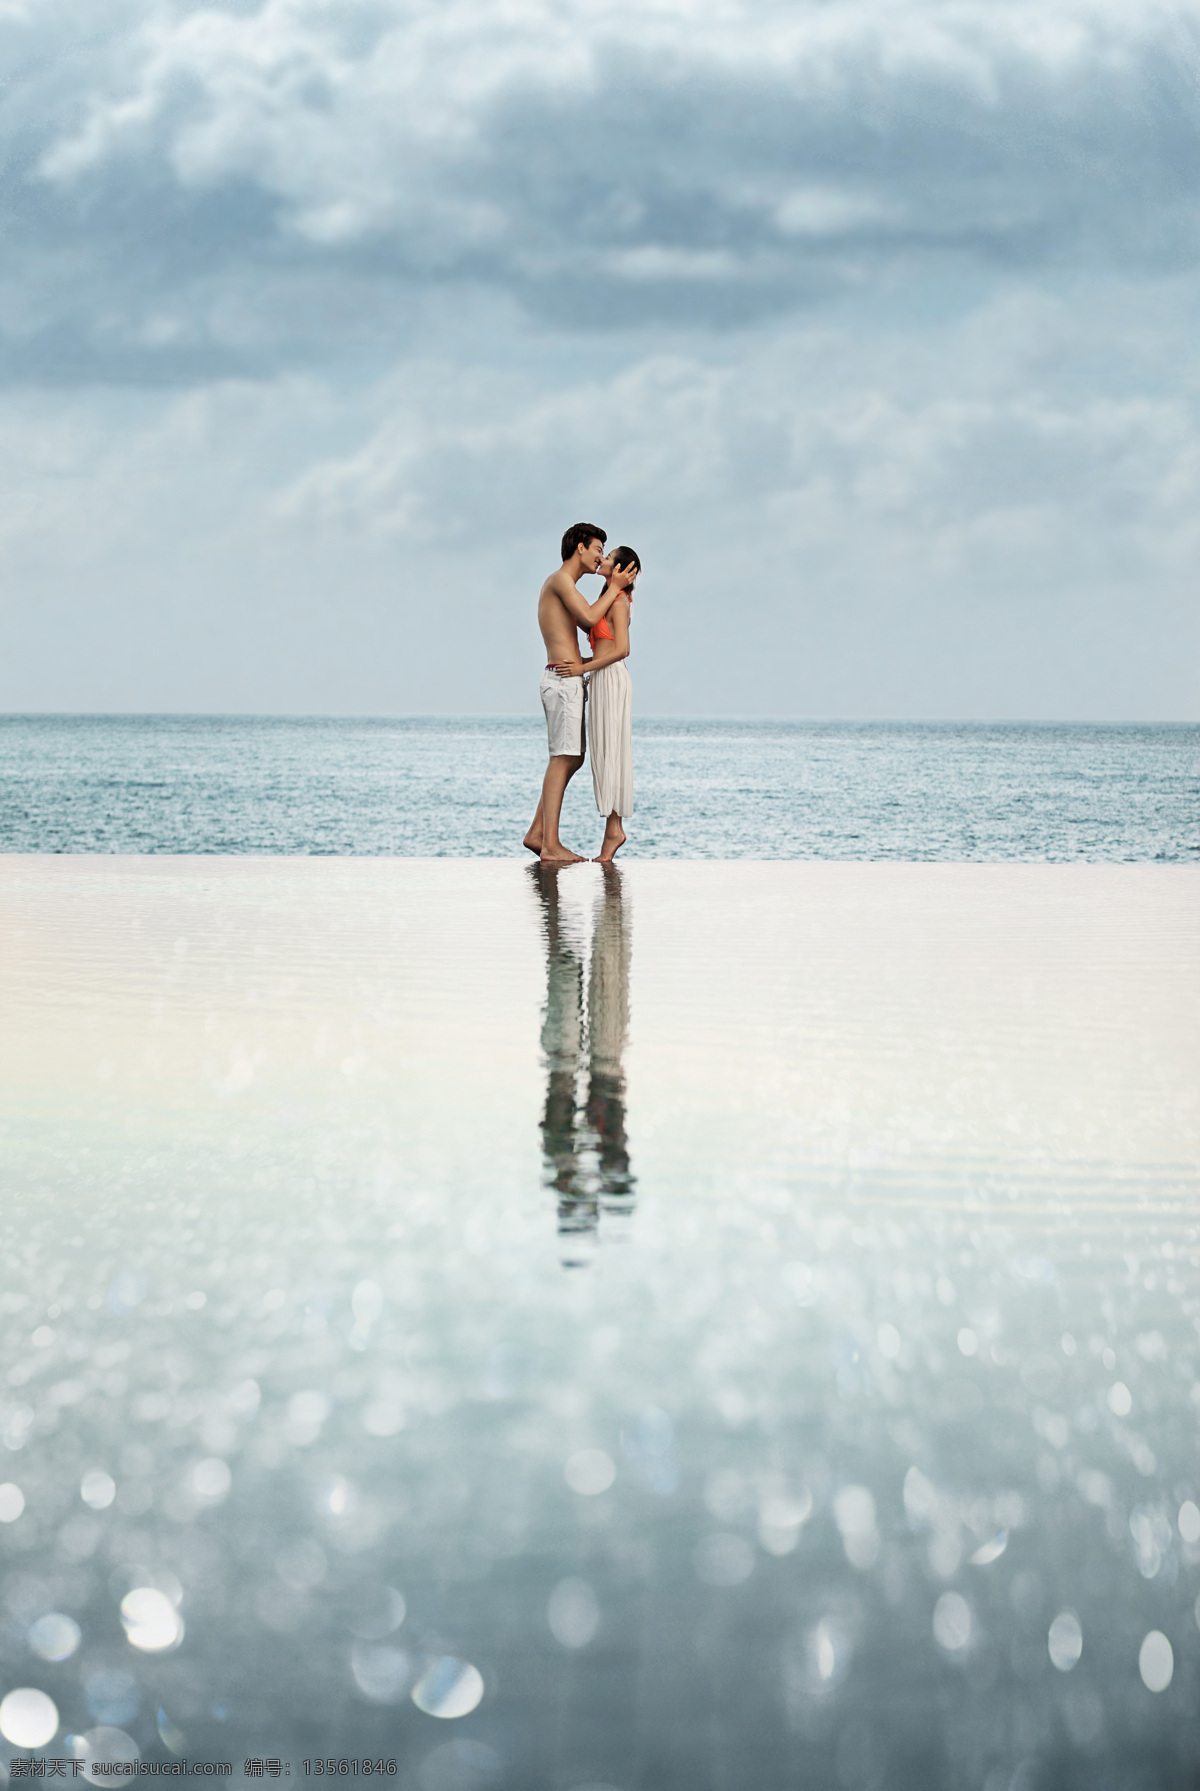 海滩 上 接吻 婚纱 情侣 新人情侣 新郎新娘 结婚照 婚纱情侣 大海 情侣图片 人物图片